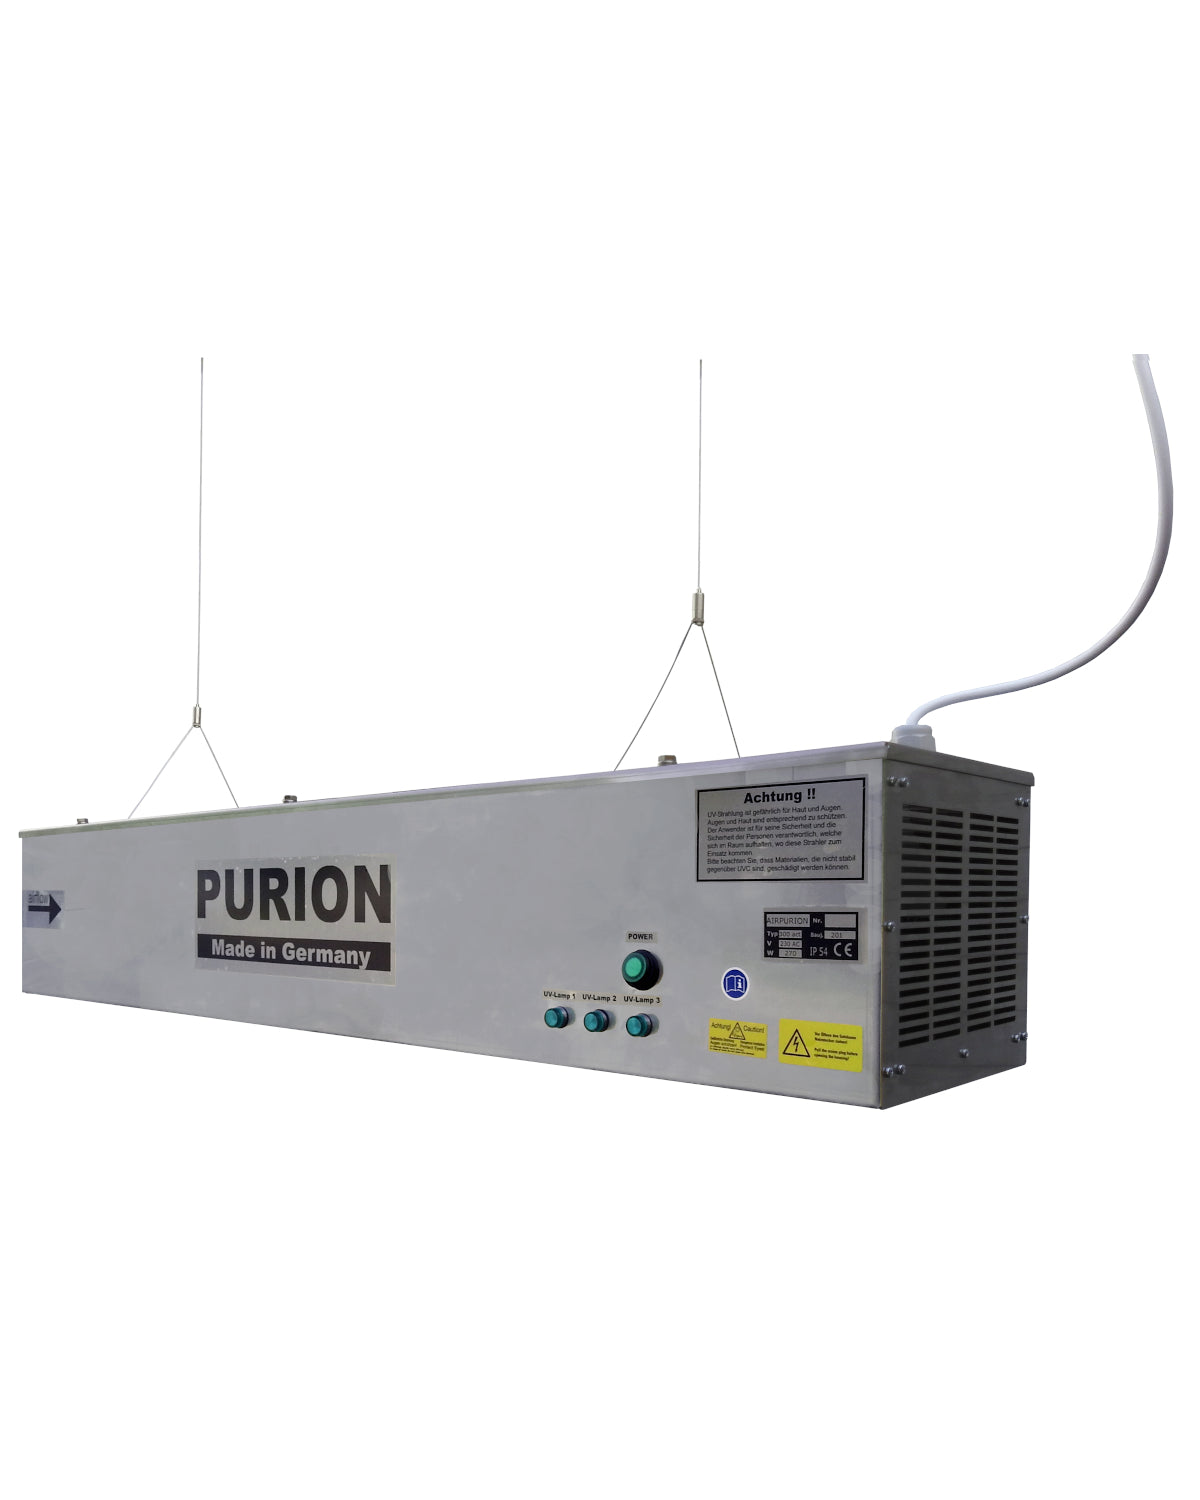 AIRPURION 300 active Basic der PURION GmbH ist ein innovatives Gerät, das mit fortschrittlicher Technologie eine effektive Luftentkeimung (Luftdesinfektion) ermöglicht. Mit seiner überlegenen Leistung und minimalem Energieverbrauch ist AIRPURION 300 active Basic von der PURION GmbH eine zuverlässige Wahl für saubere Luft.